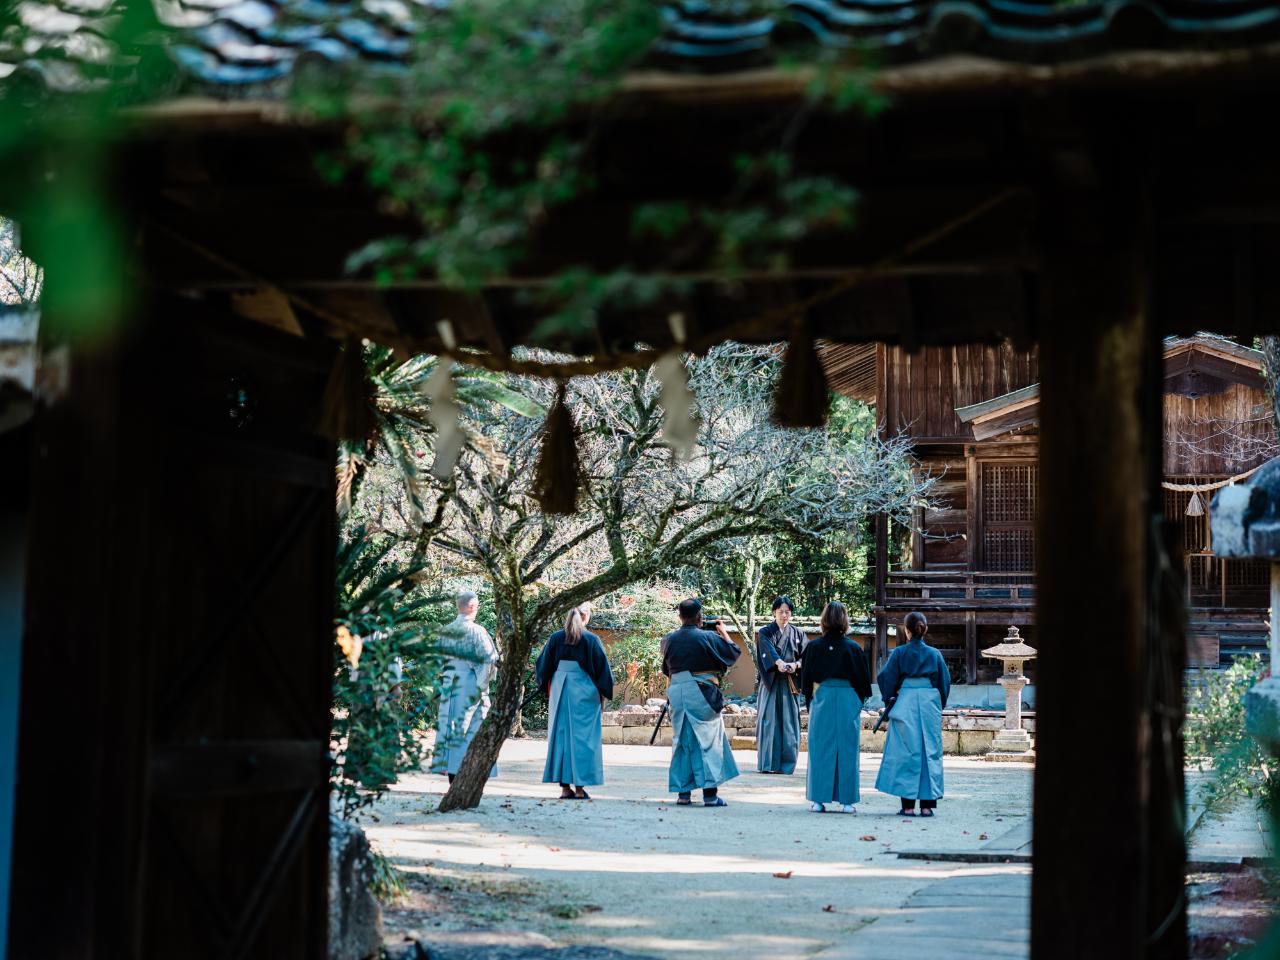 Experience Samurai and Iaido Culture at Taishoji Temple